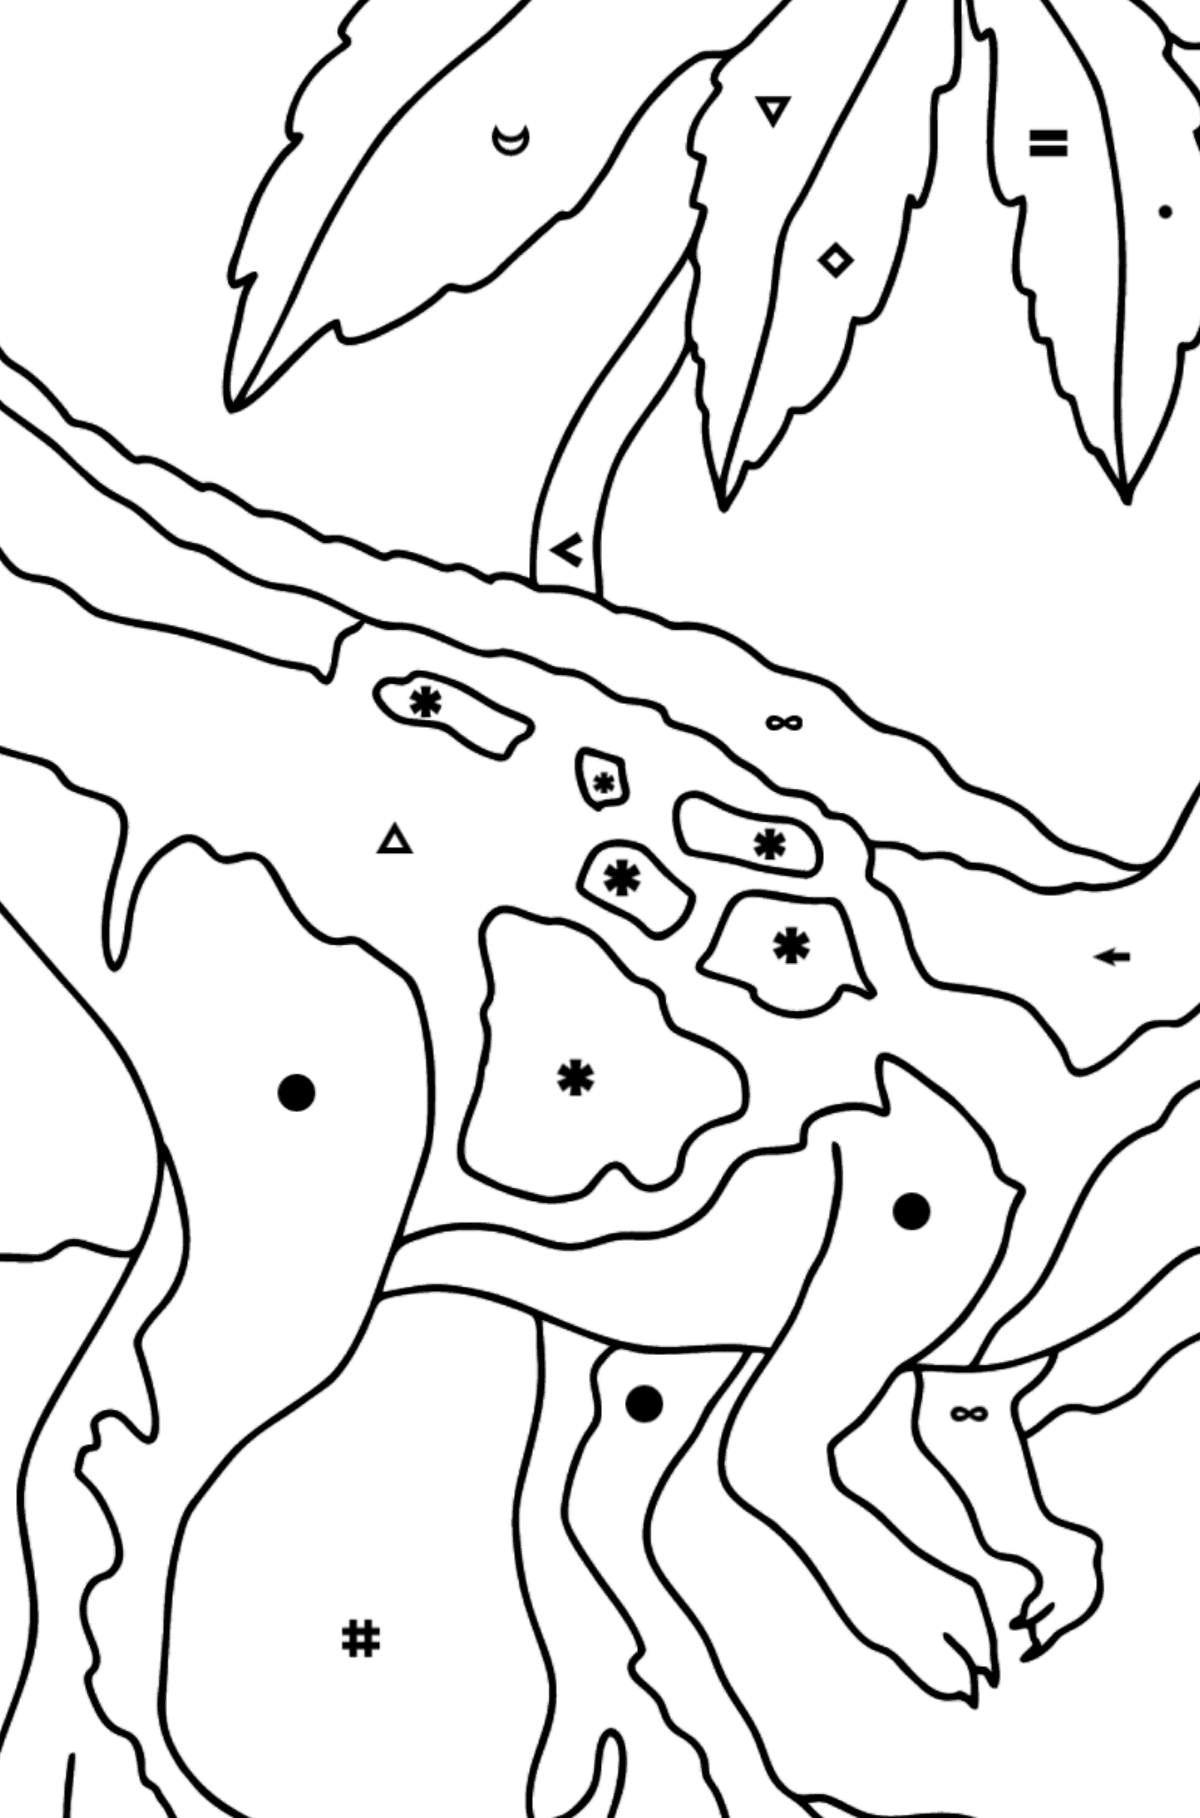 Tyrannosaurus Predator Coloring Page (difícil) - Colorear por Símbolos para Niños